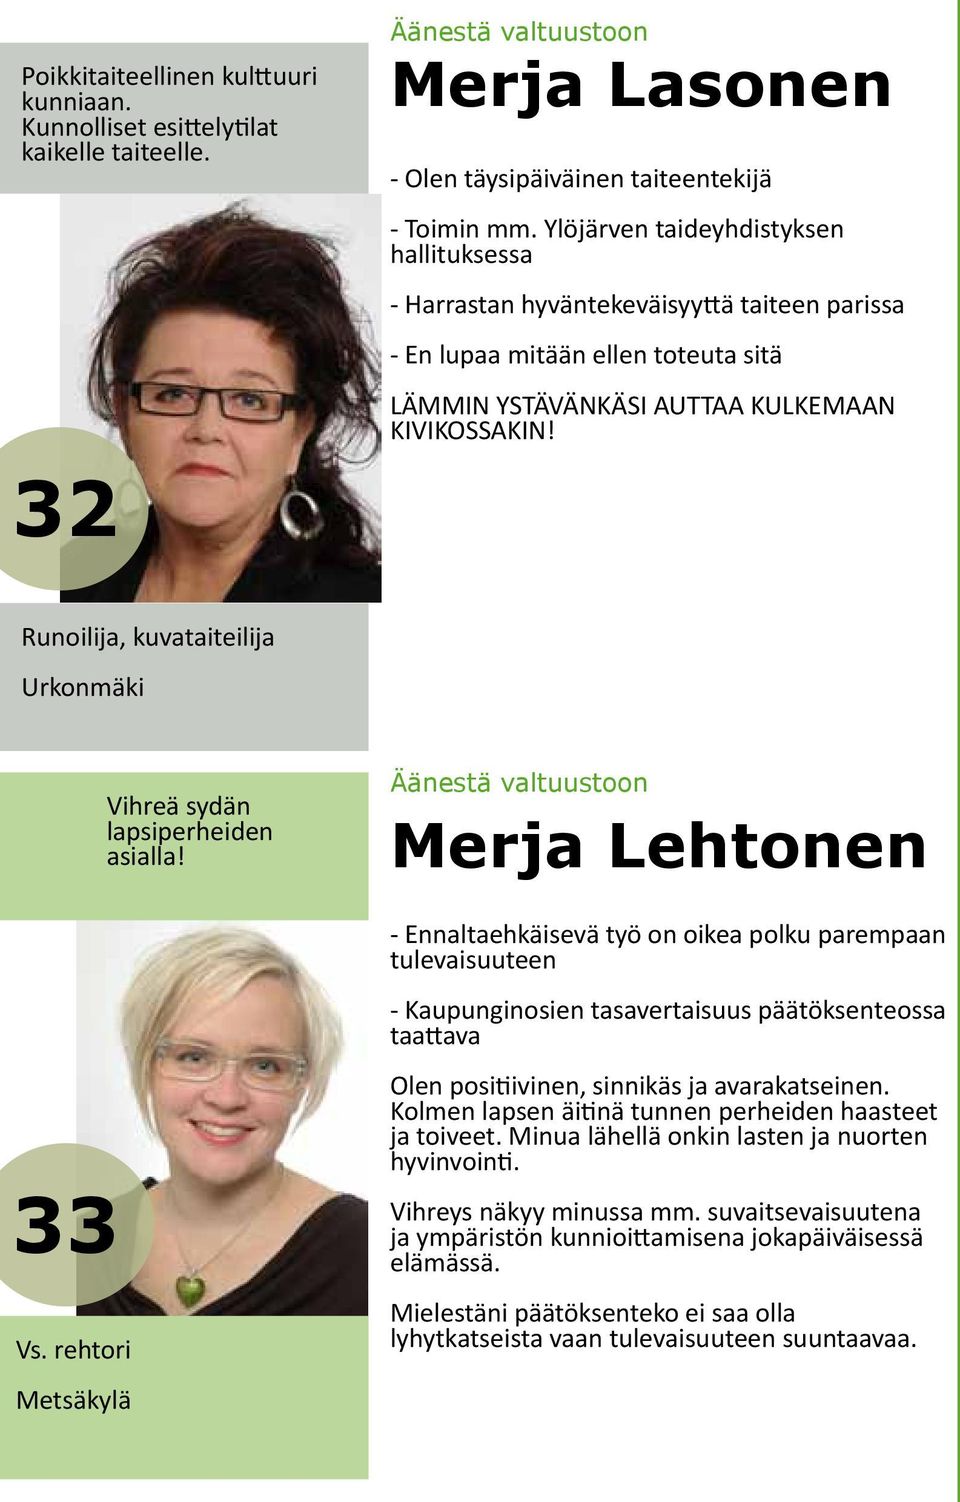 Runoilija, kuvataiteilija Urkonmäki 33 Vs. rehtori Metsäkylä Vihreä sydän lapsiperheiden asialla!